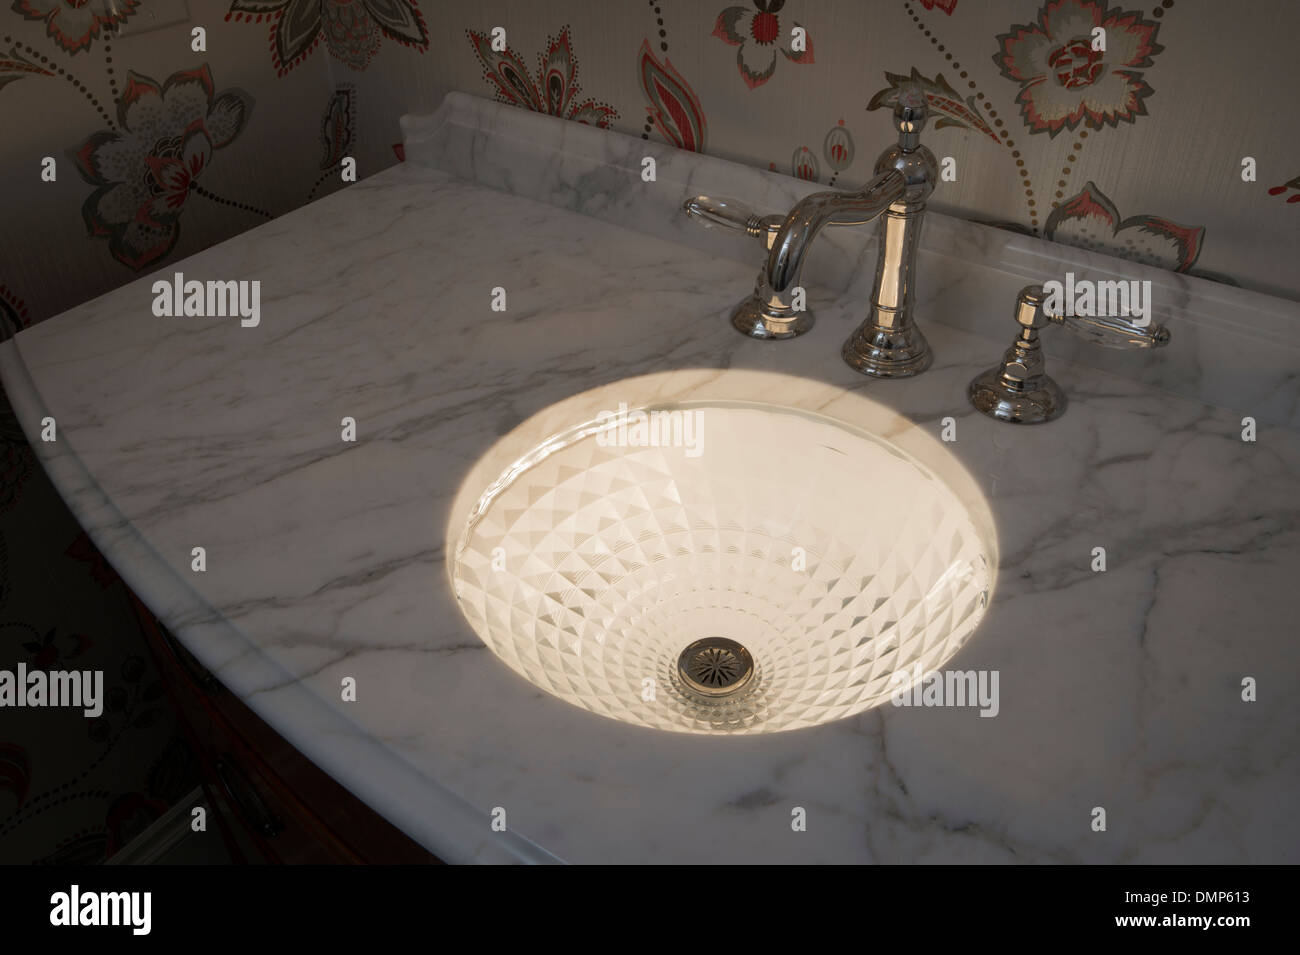 Crystal lumineux salle de bains lavabo avec comptoir en marbre blanc Banque D'Images